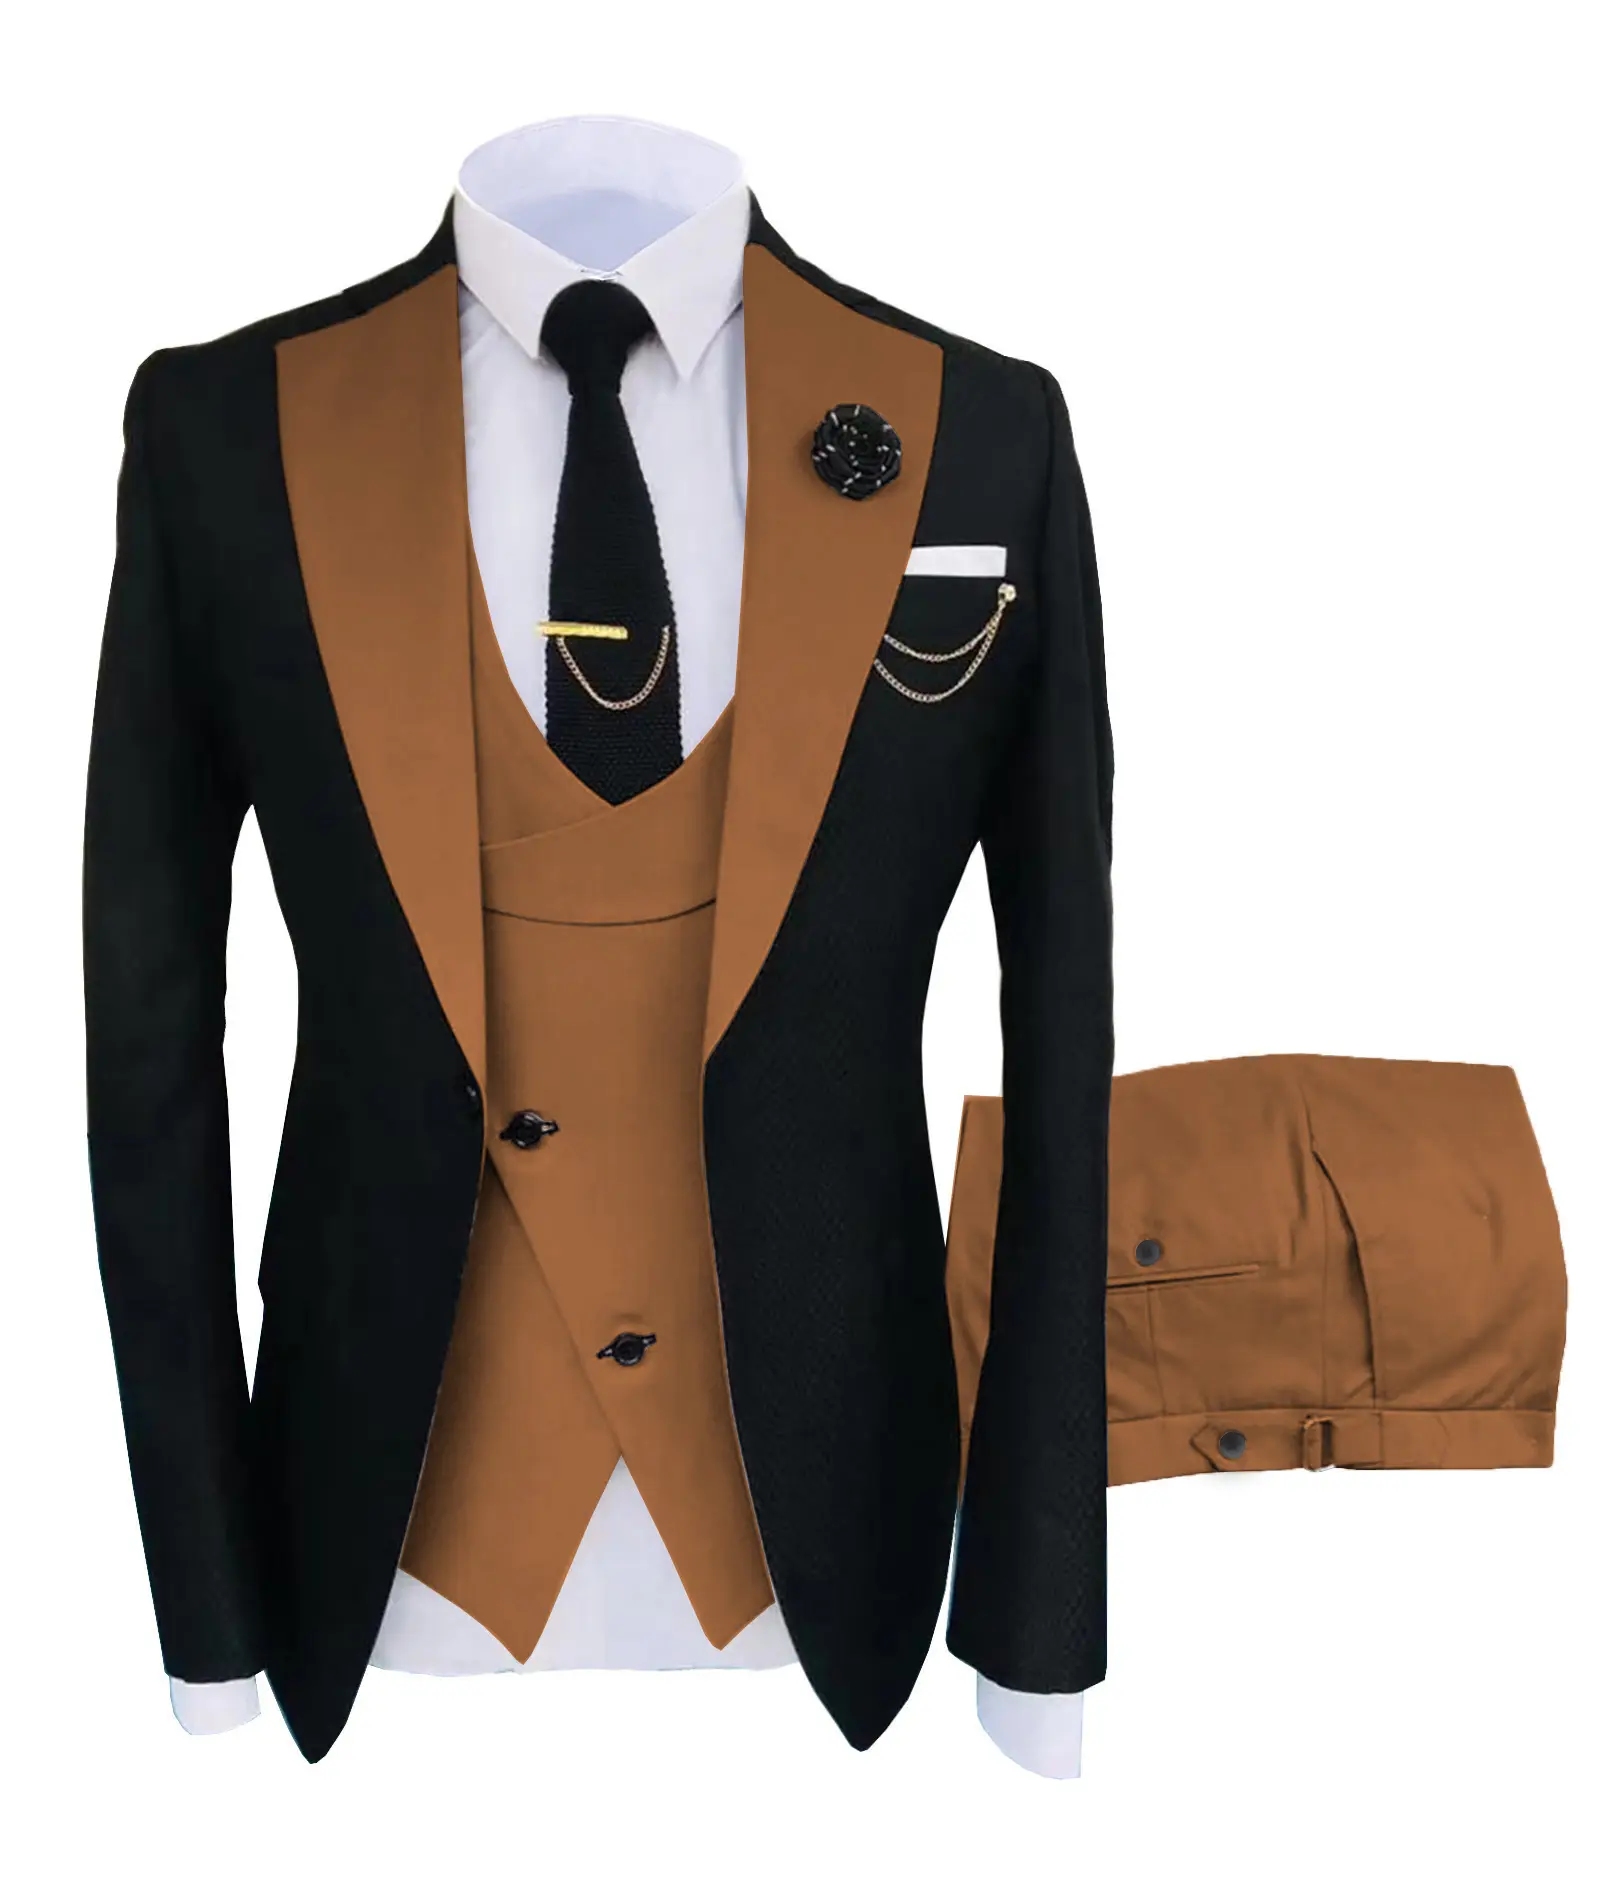 Alephan özel takım elbise İtalyan erkek Slim Fit Blazer seti erkek iş ceket pantolon yelek klasik erkek takım elbise 3 adet Arket blazer